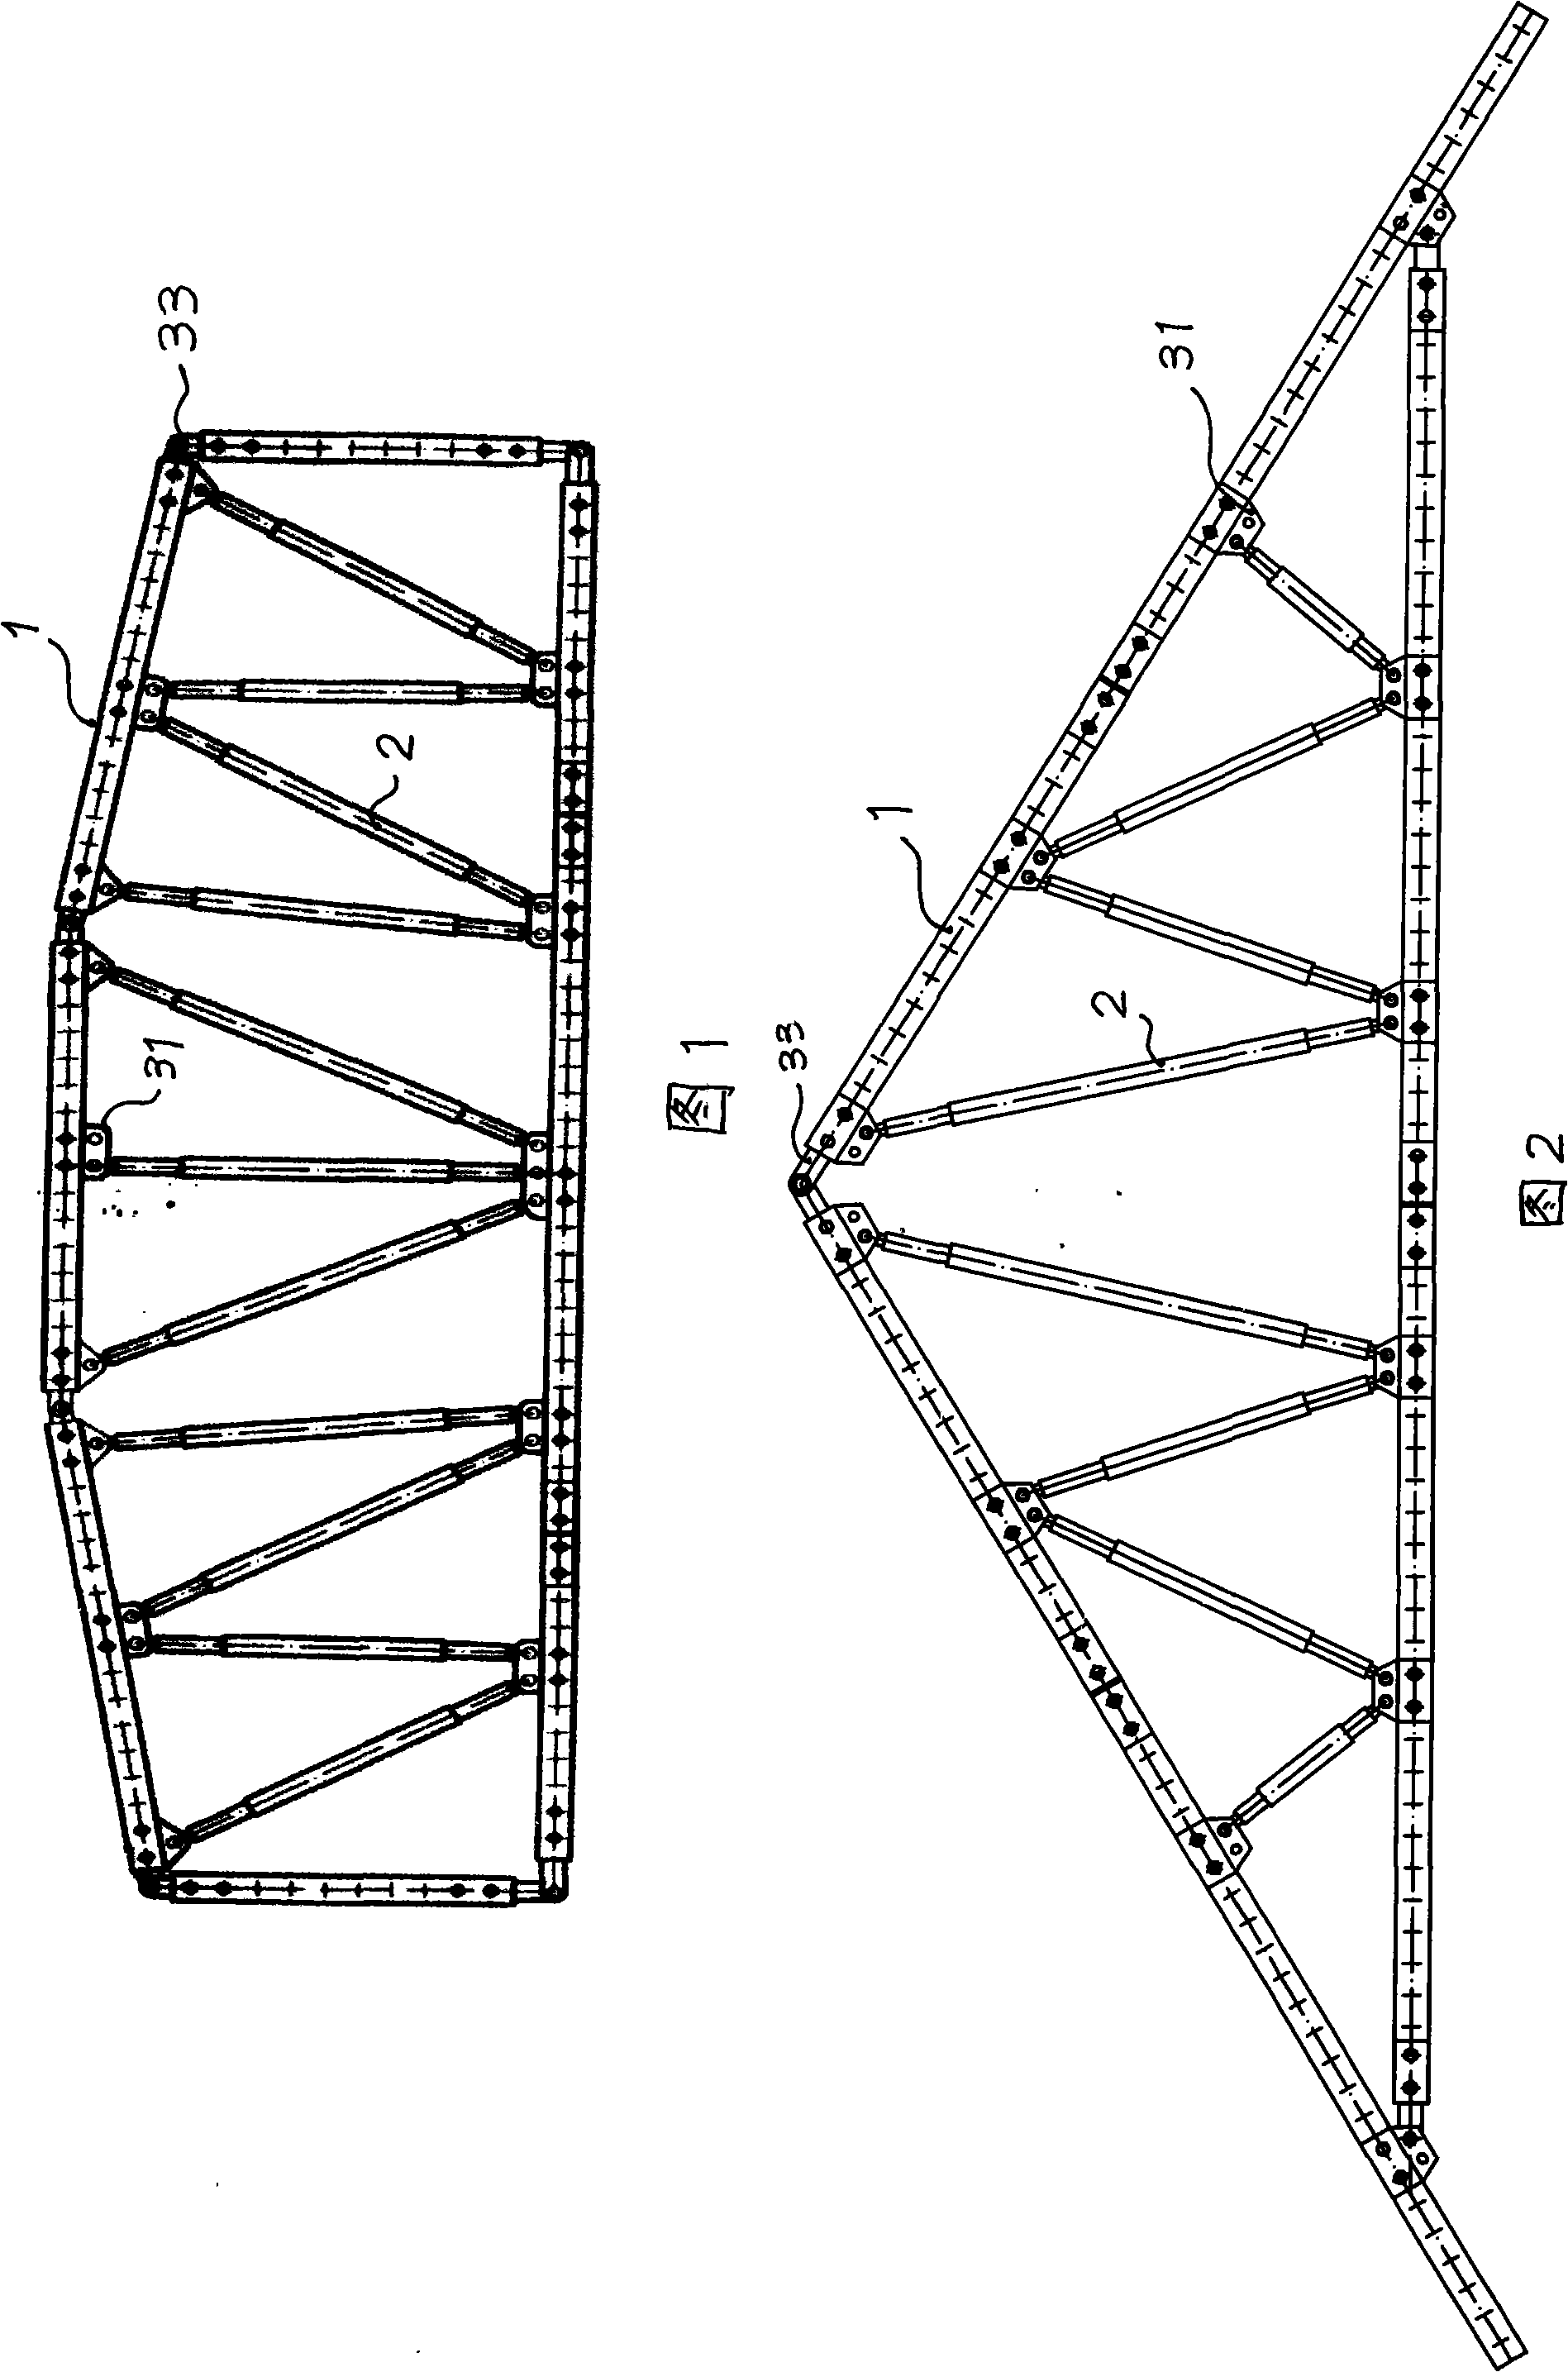 Girders assembling external member as well as girders and girders support system